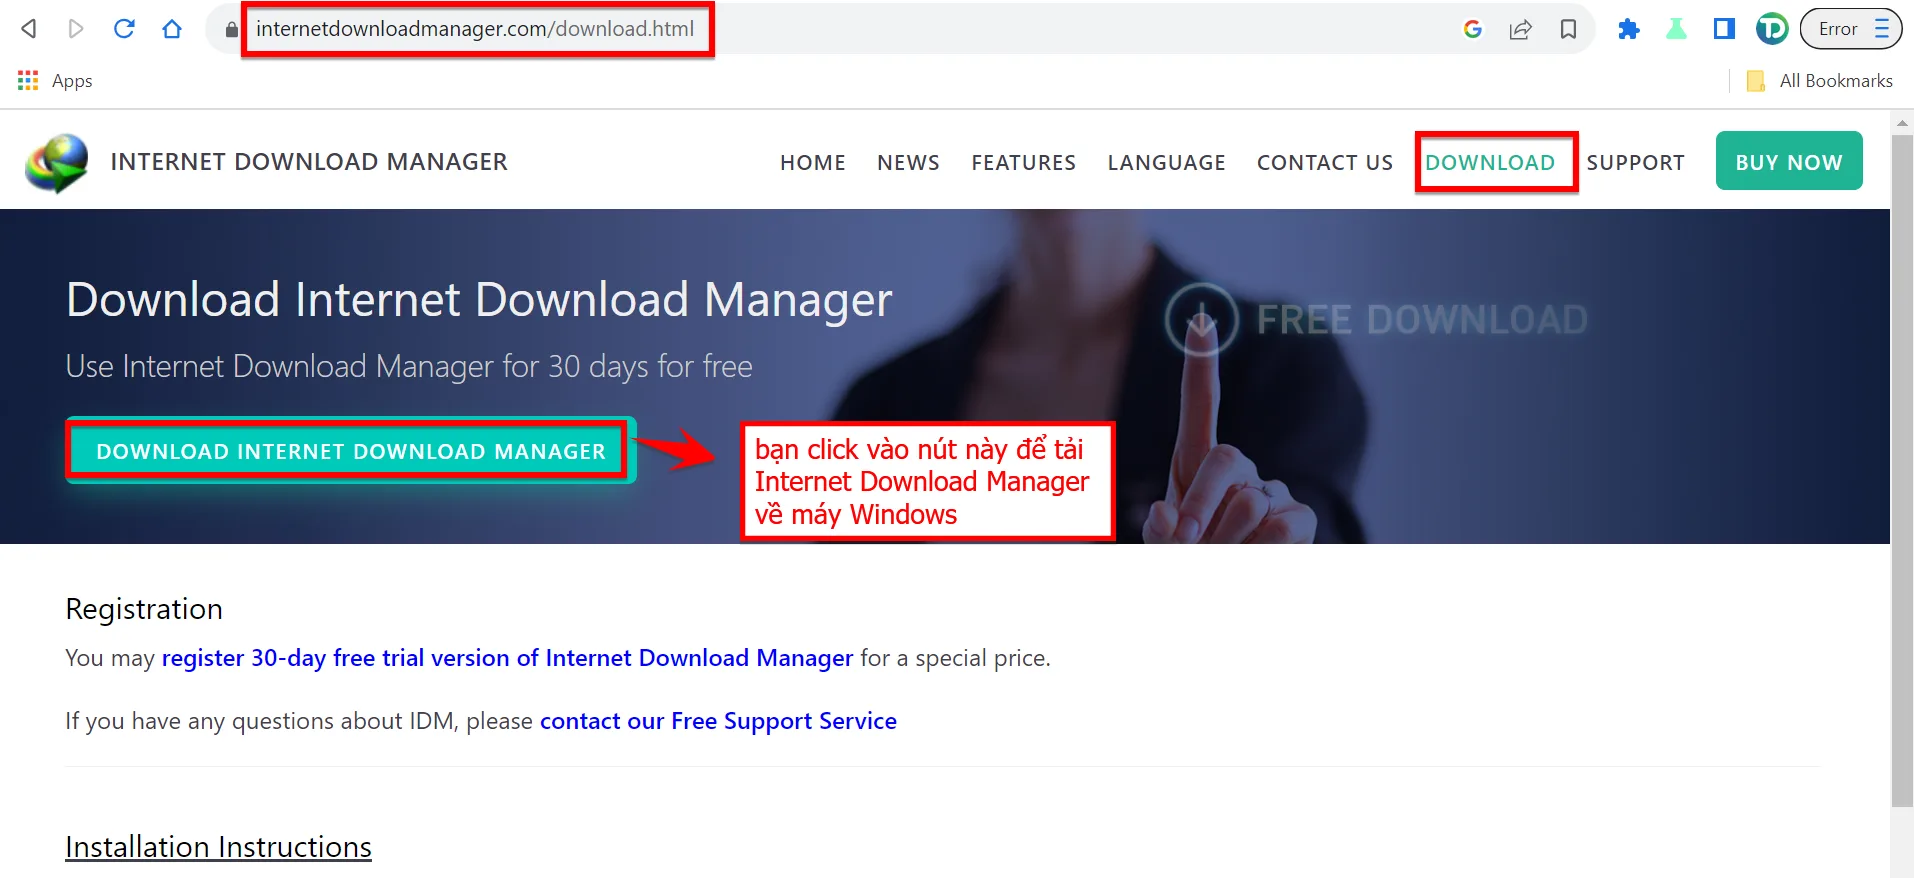 Bạn Click Vào Download Internet Download Manager để Tải File Cài đặt IDM Về Máy